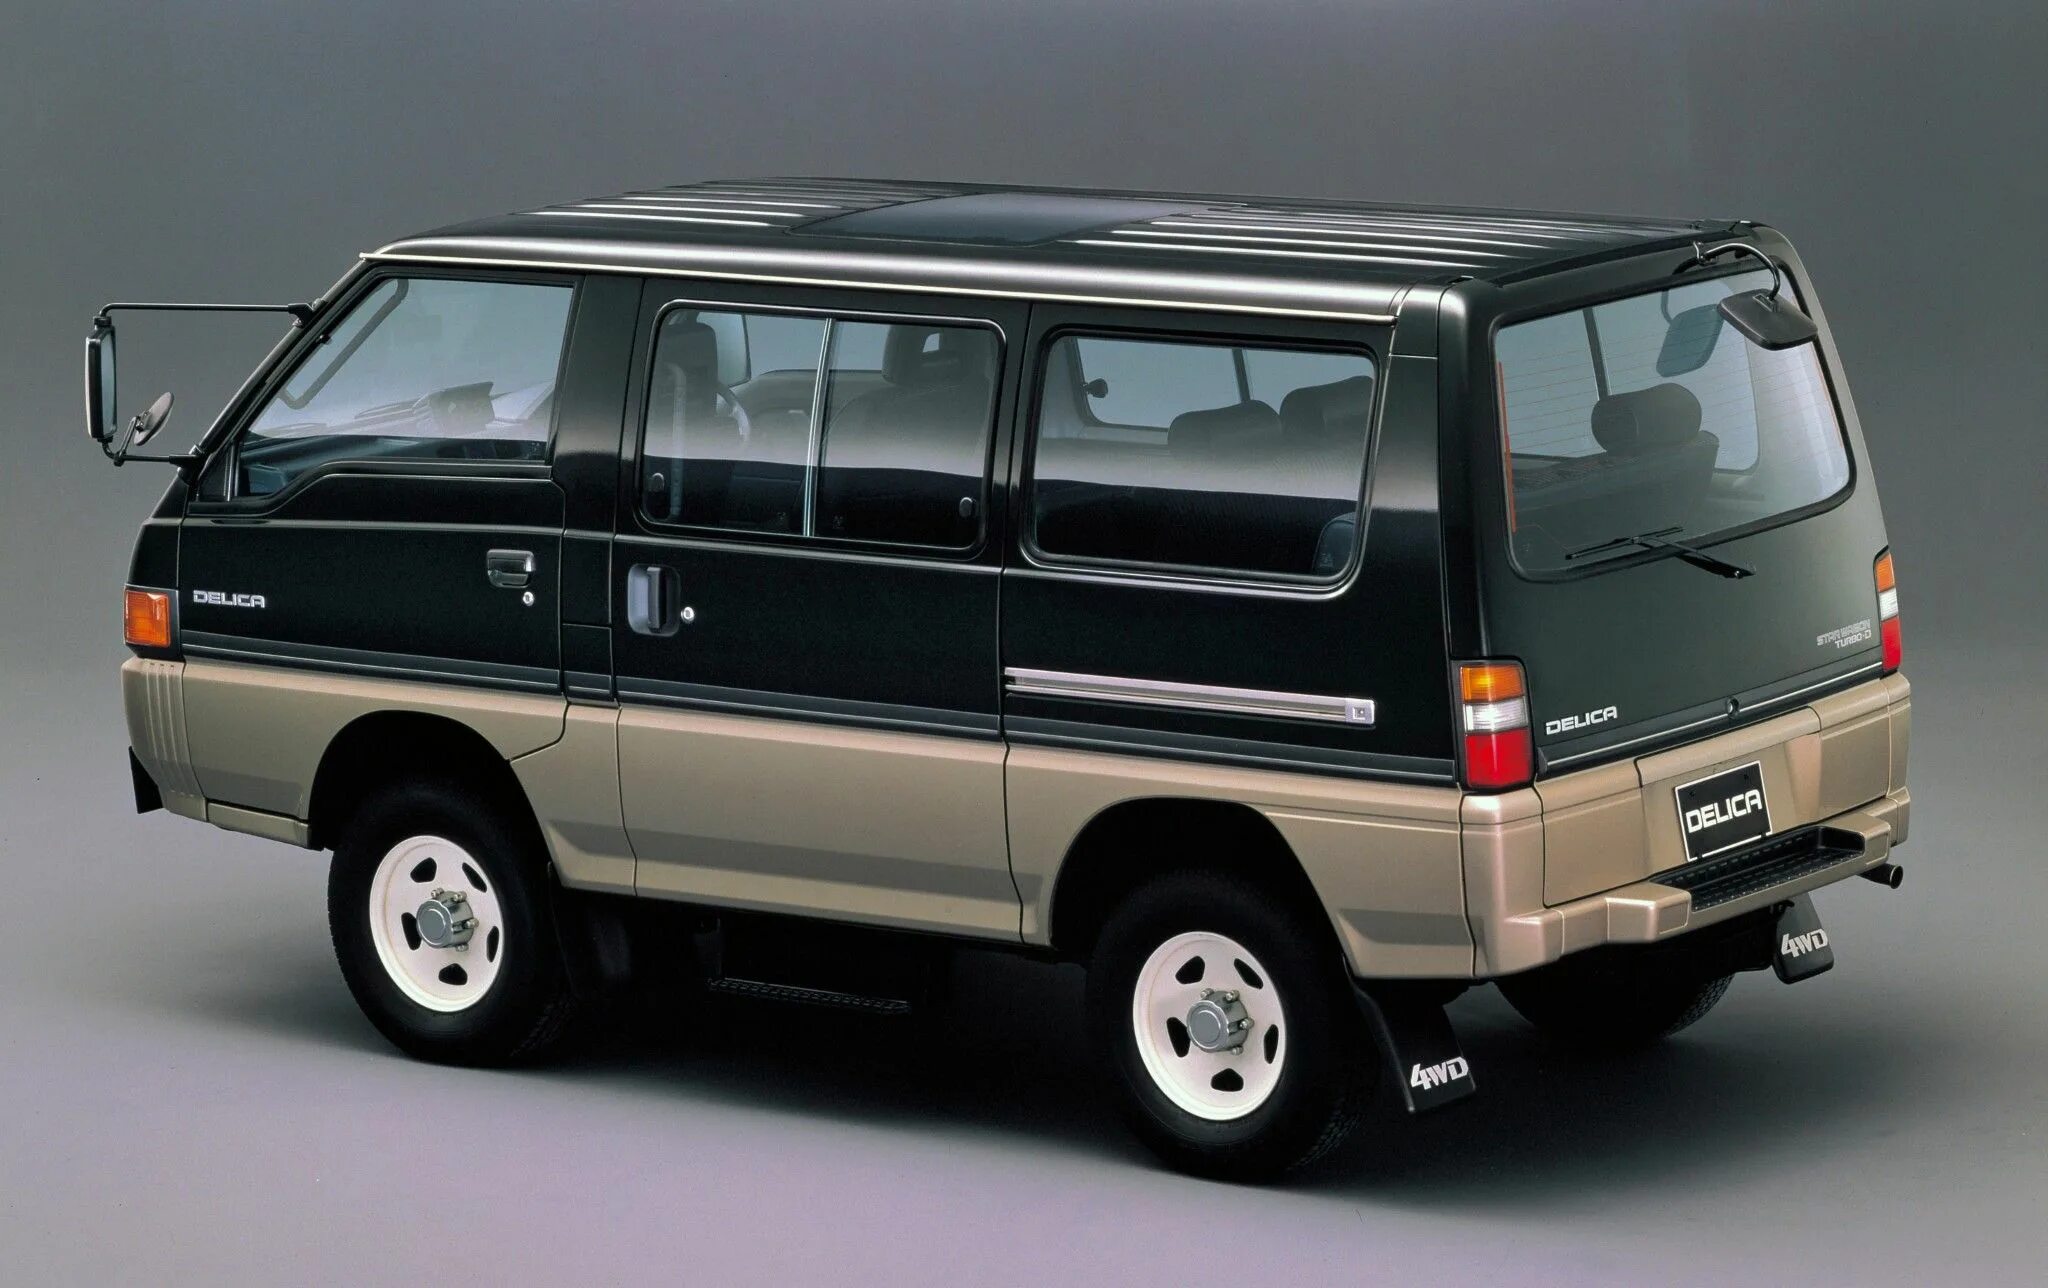 Mmc delica. Mitsubishi Delica Star Wagon 4wd. Mitsubishi Delica 4. Mitsubishi Delica 1986. Mitsubishi Delica 4x4.